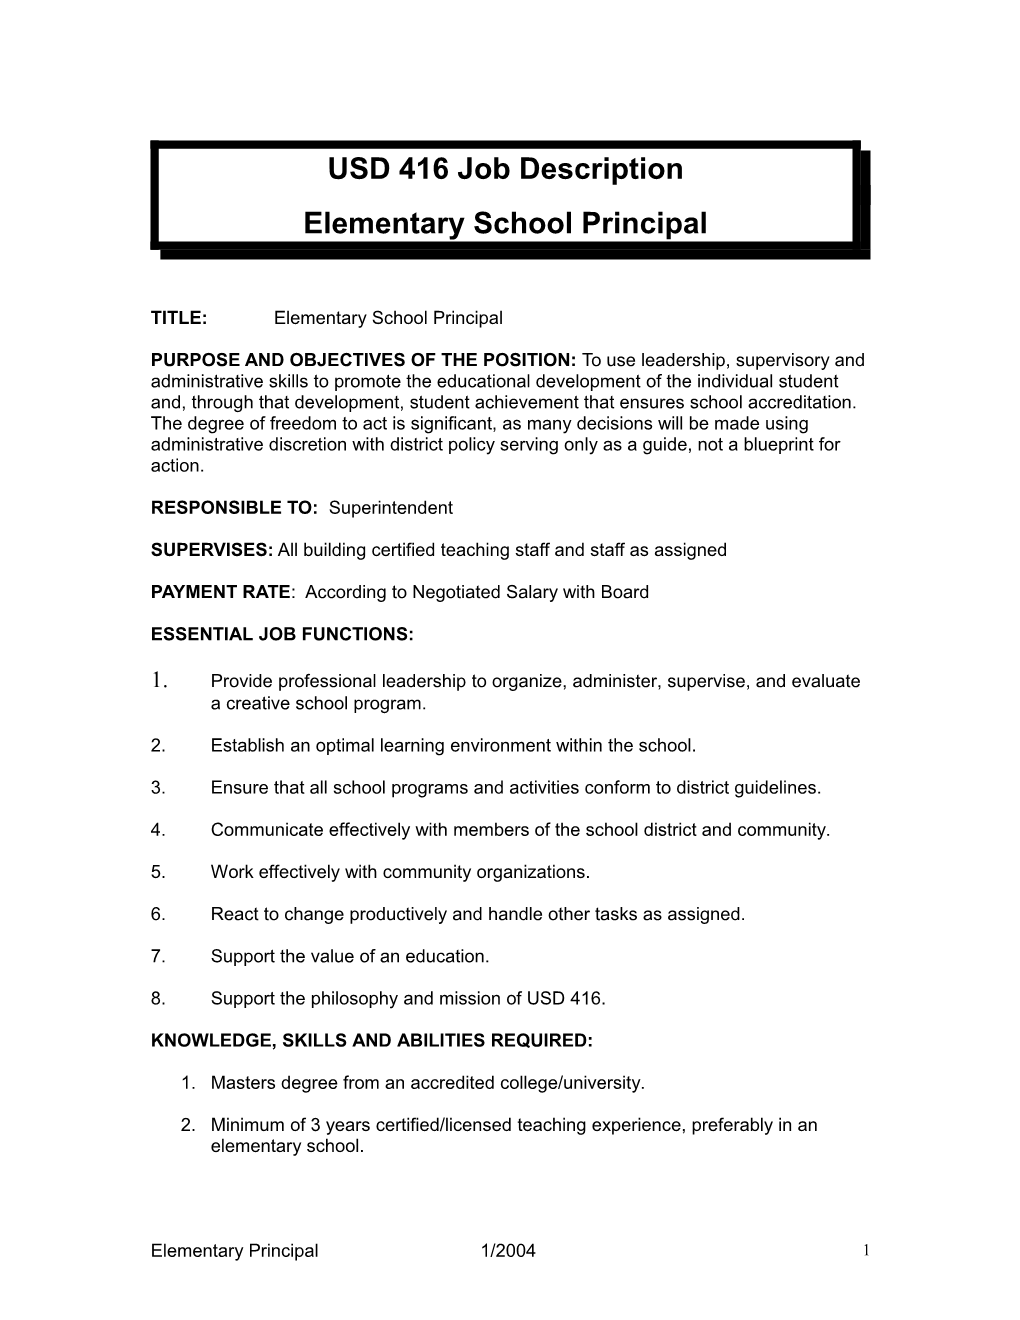 USD 416 Job Description-Principal